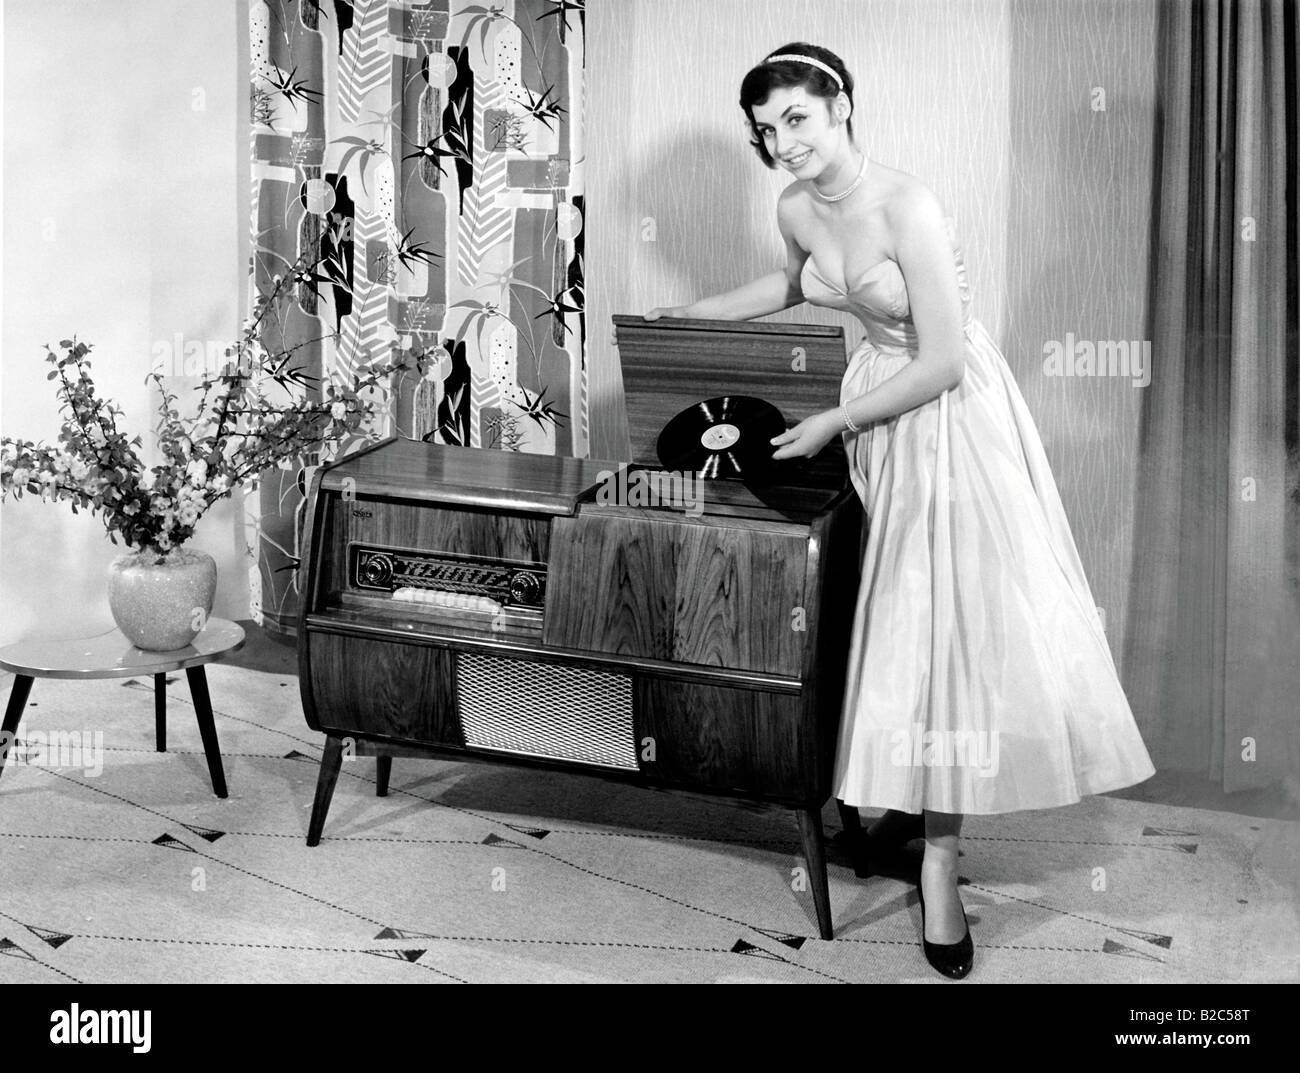 Mujer posando junto a un tocadiscos, mantiene un registro histórico de la imagen alrededor de 1955 Foto de stock